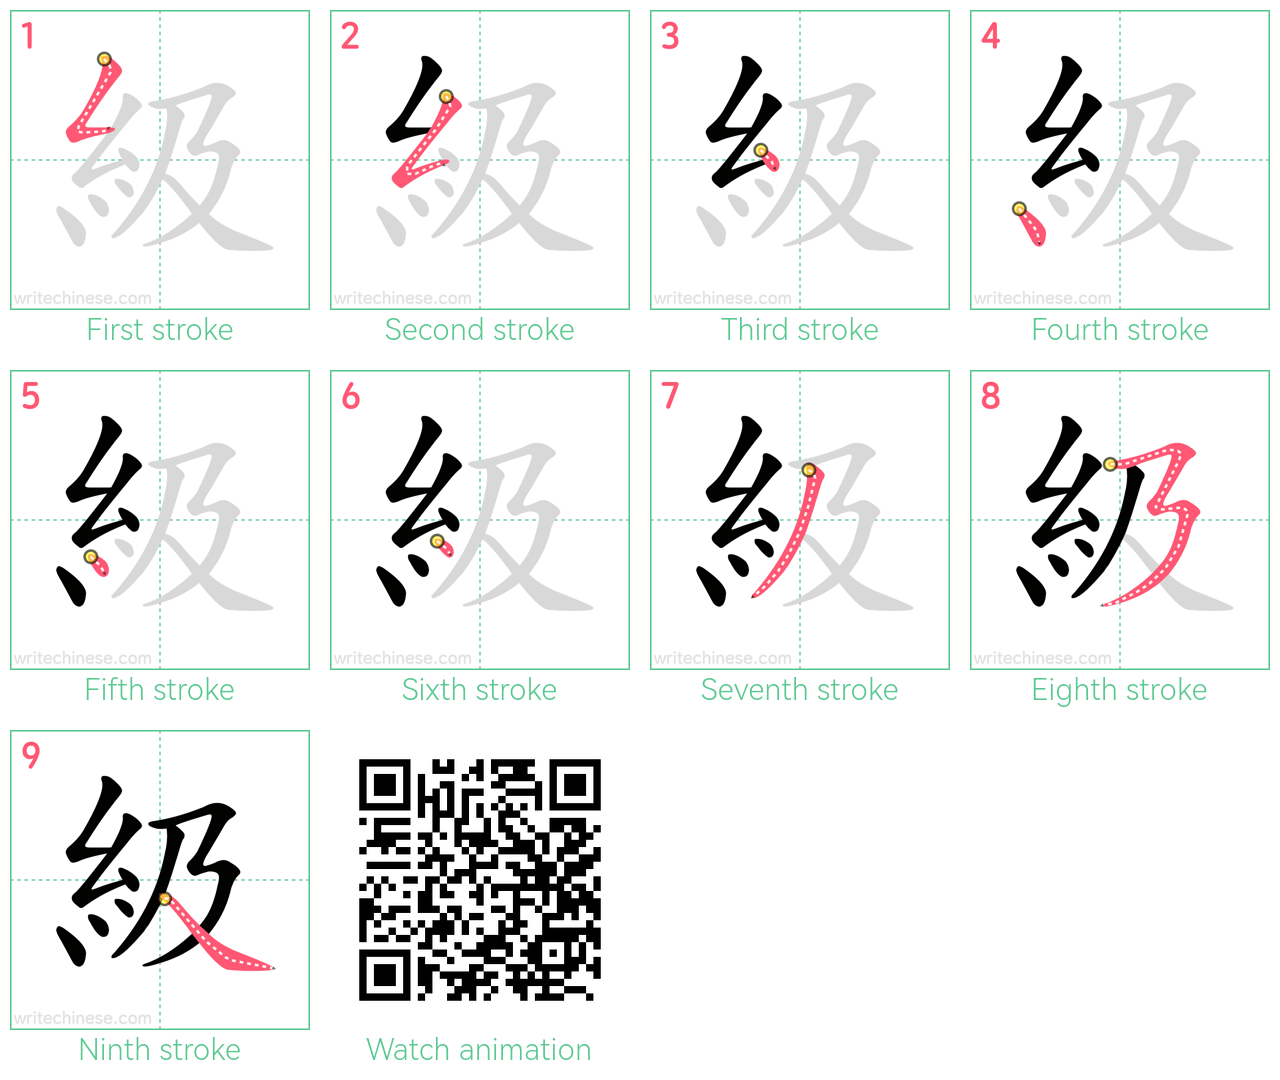 級 step-by-step stroke order diagrams